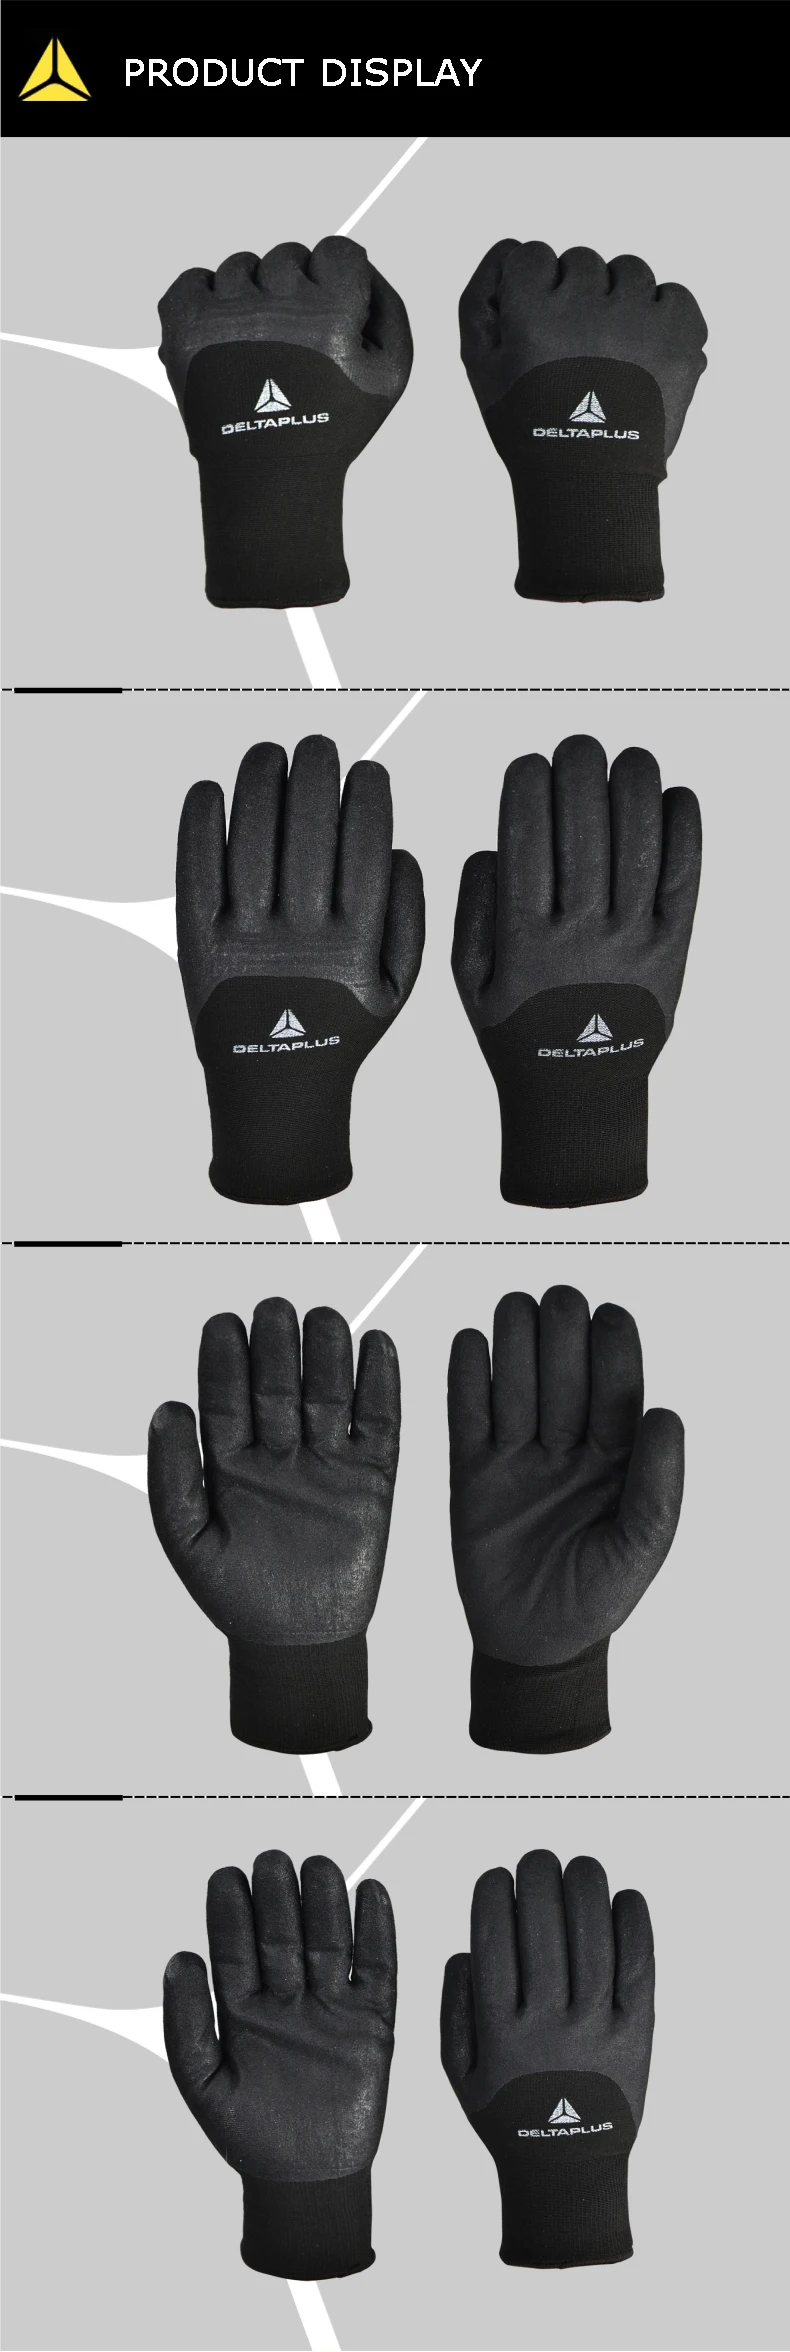 DELTA PLUS нитриловые низкотемпературные теплые перчатки зимние теплые износостойкие рабочие перчатки для езды на лыжах ветрозащитные защитные перчатки